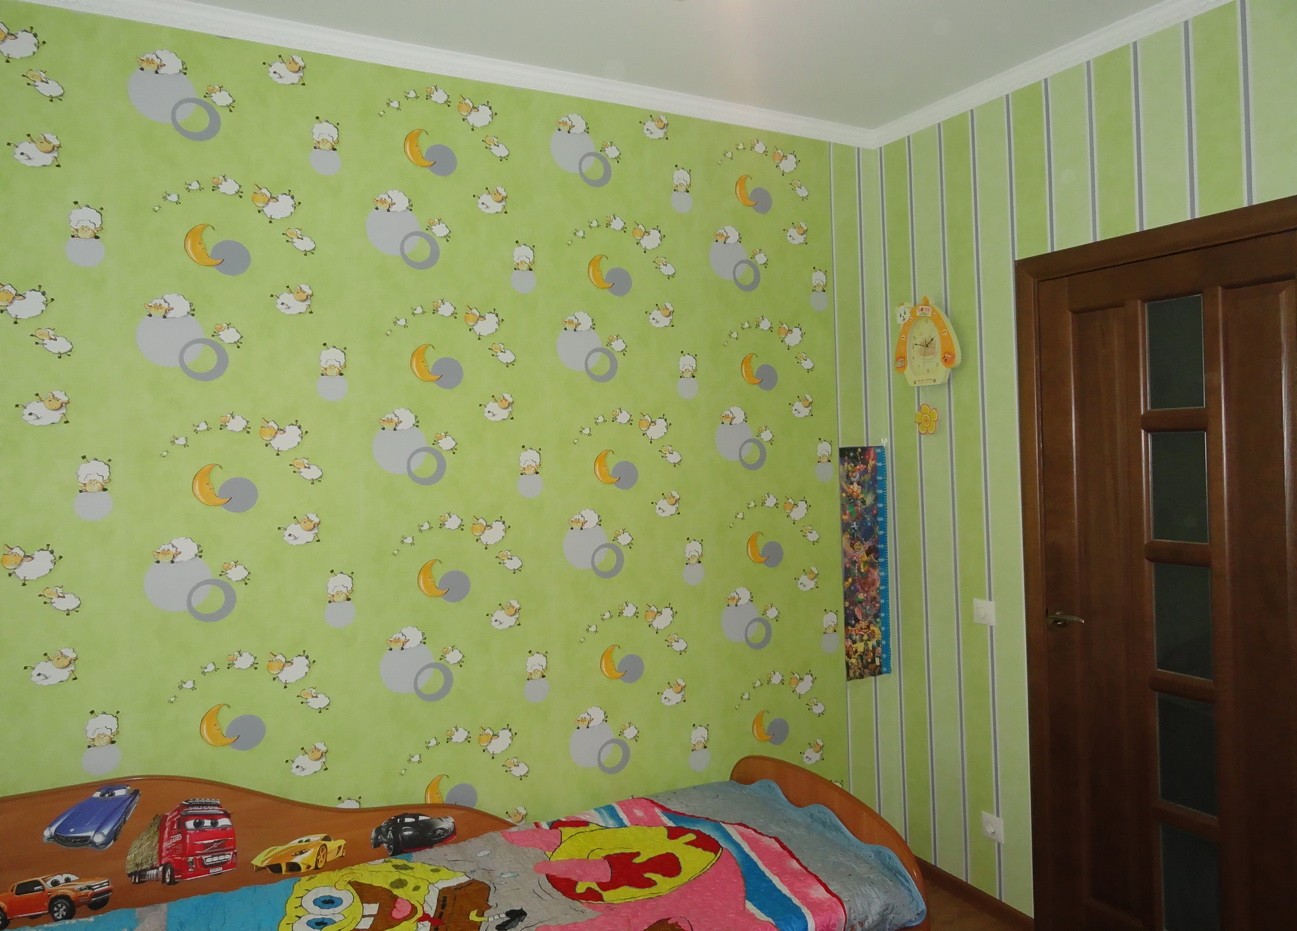 Обои для детской комнаты, как подобрать обои в детскую двух цветов, варианты дизайна